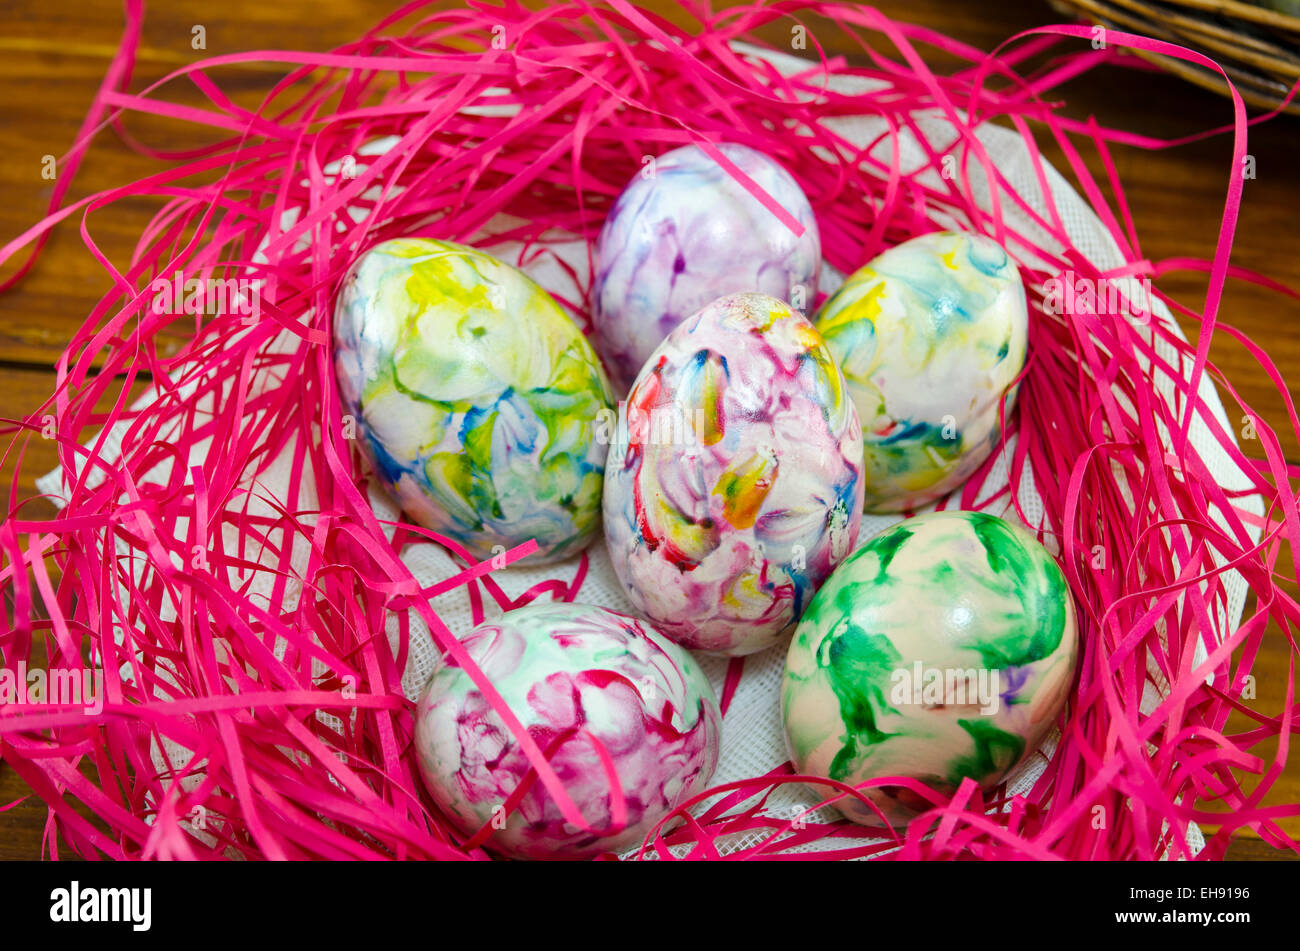 Les oeufs peints et colorés dans un nid de roses sur une table en bois Banque D'Images